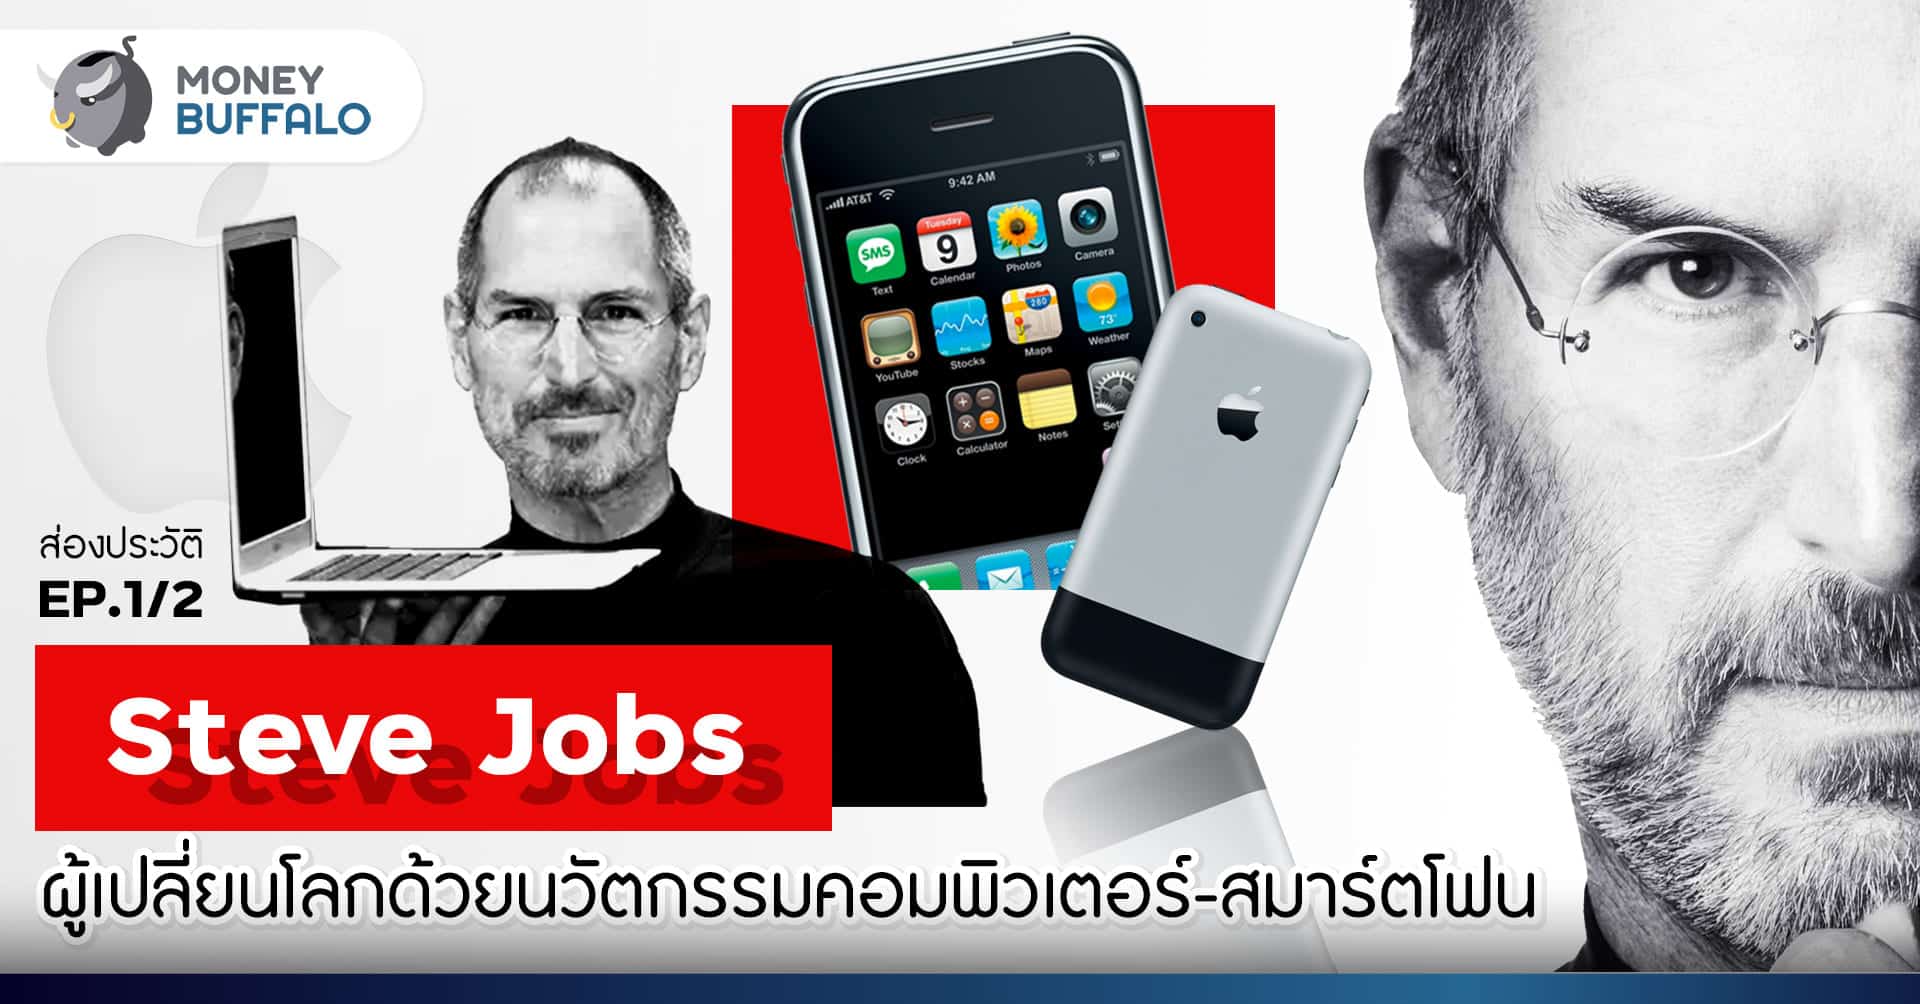 ส่องประวัติ Steve Jobs | EP 1/2 ผู้เปลี่ยนโลกด้วยนวัตกรรมคอมพิวเตอร์-สมาร์ทโฟน